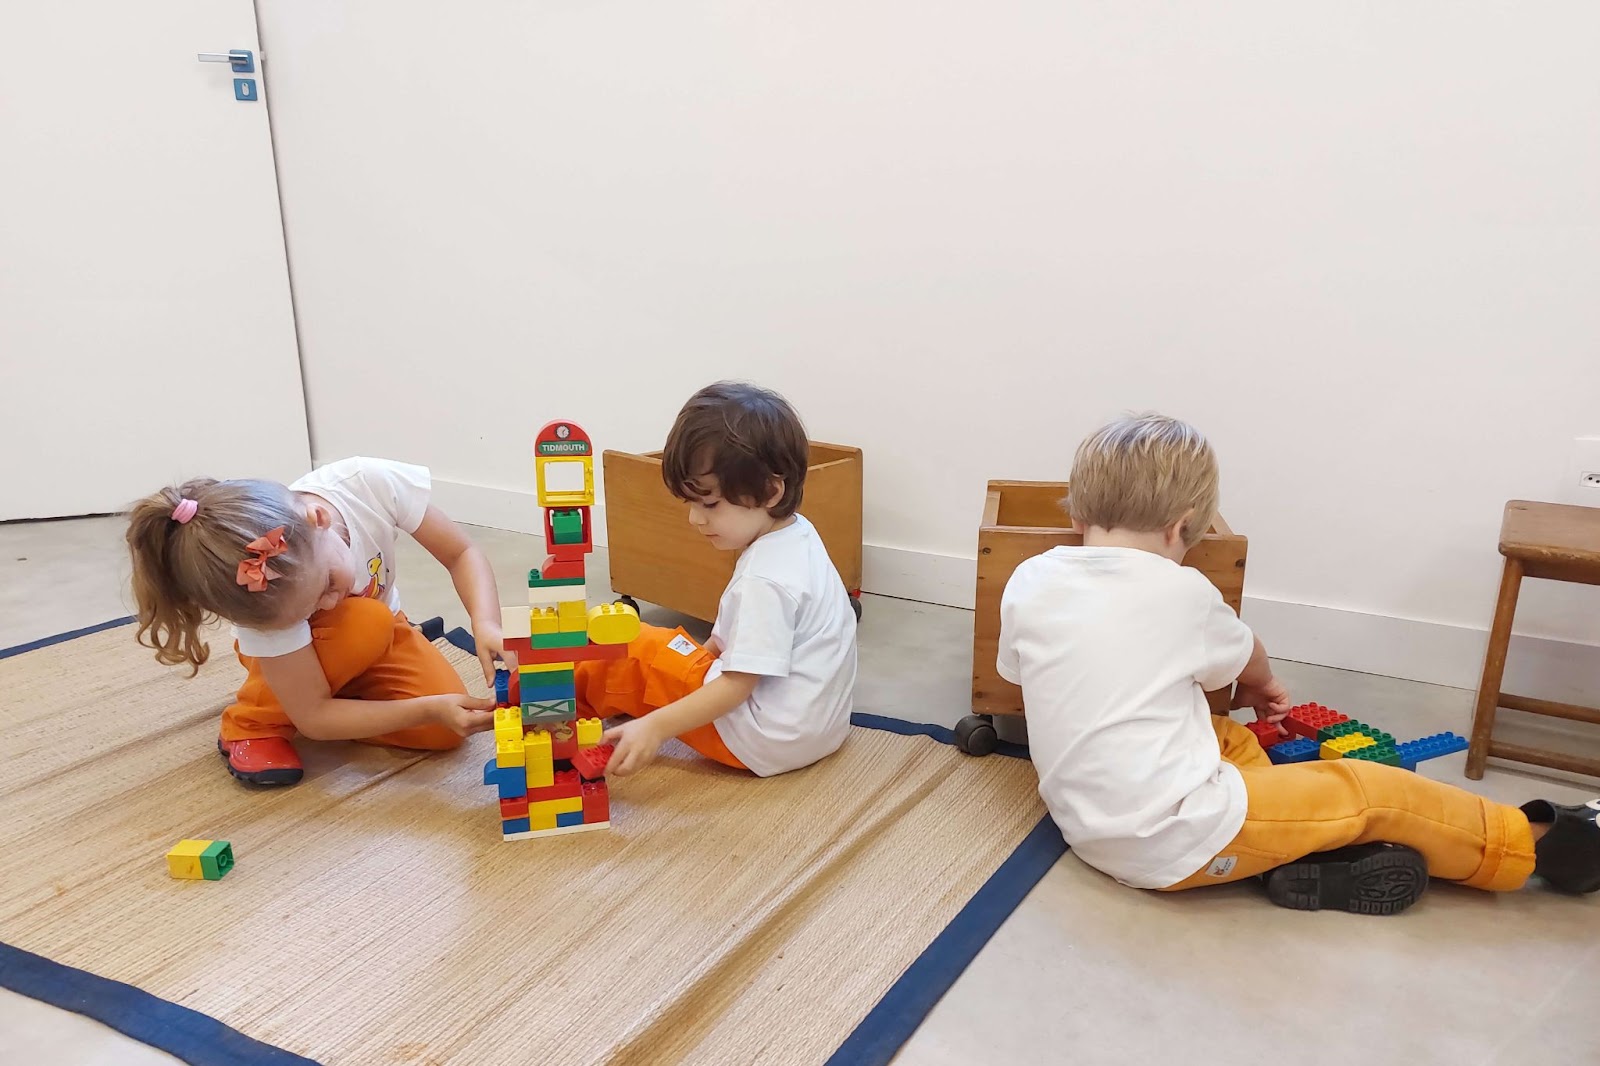 A imagem mostra 3 crianças brincando com um brinquedo de peças de montar coloridas.